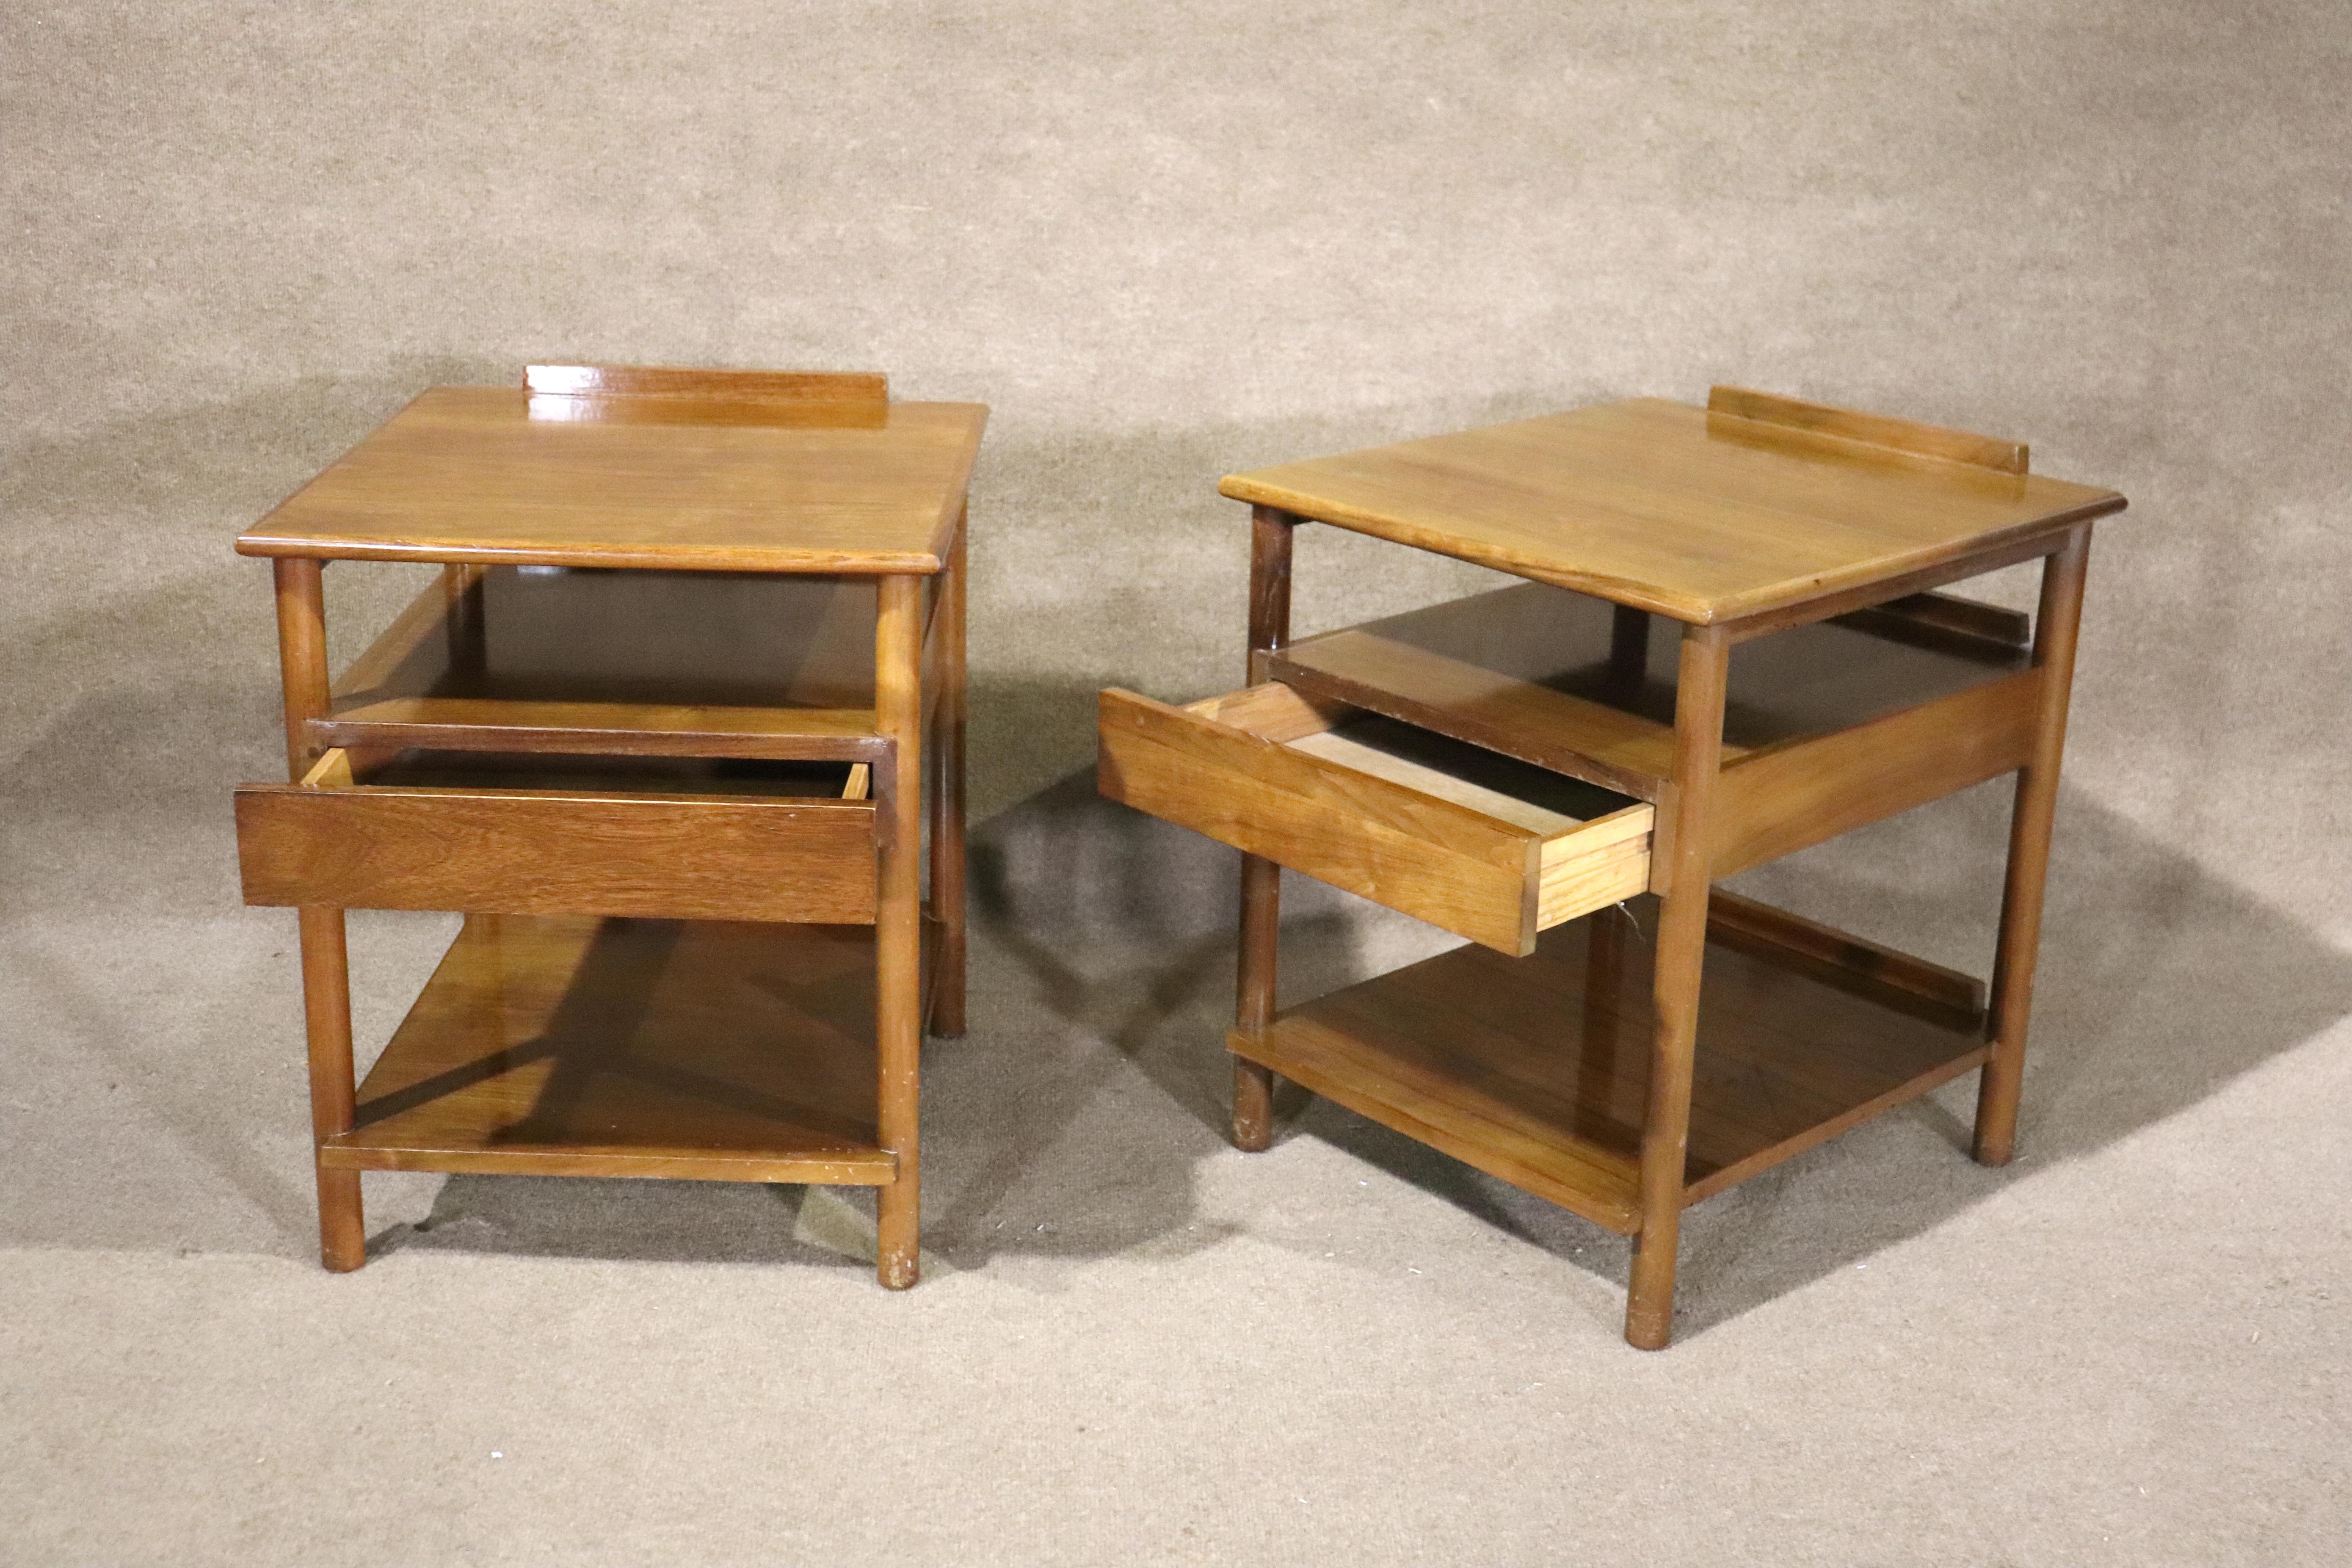 William Pahlmann entwarf Tische mit offenem Stauraum und Schublade. Verkauft durch John Stuart Inc. Diese Tische sind ideal für das Schlafzimmer oder das Sofa.
Bitte bestätigen Sie den Standort NY oder NJ